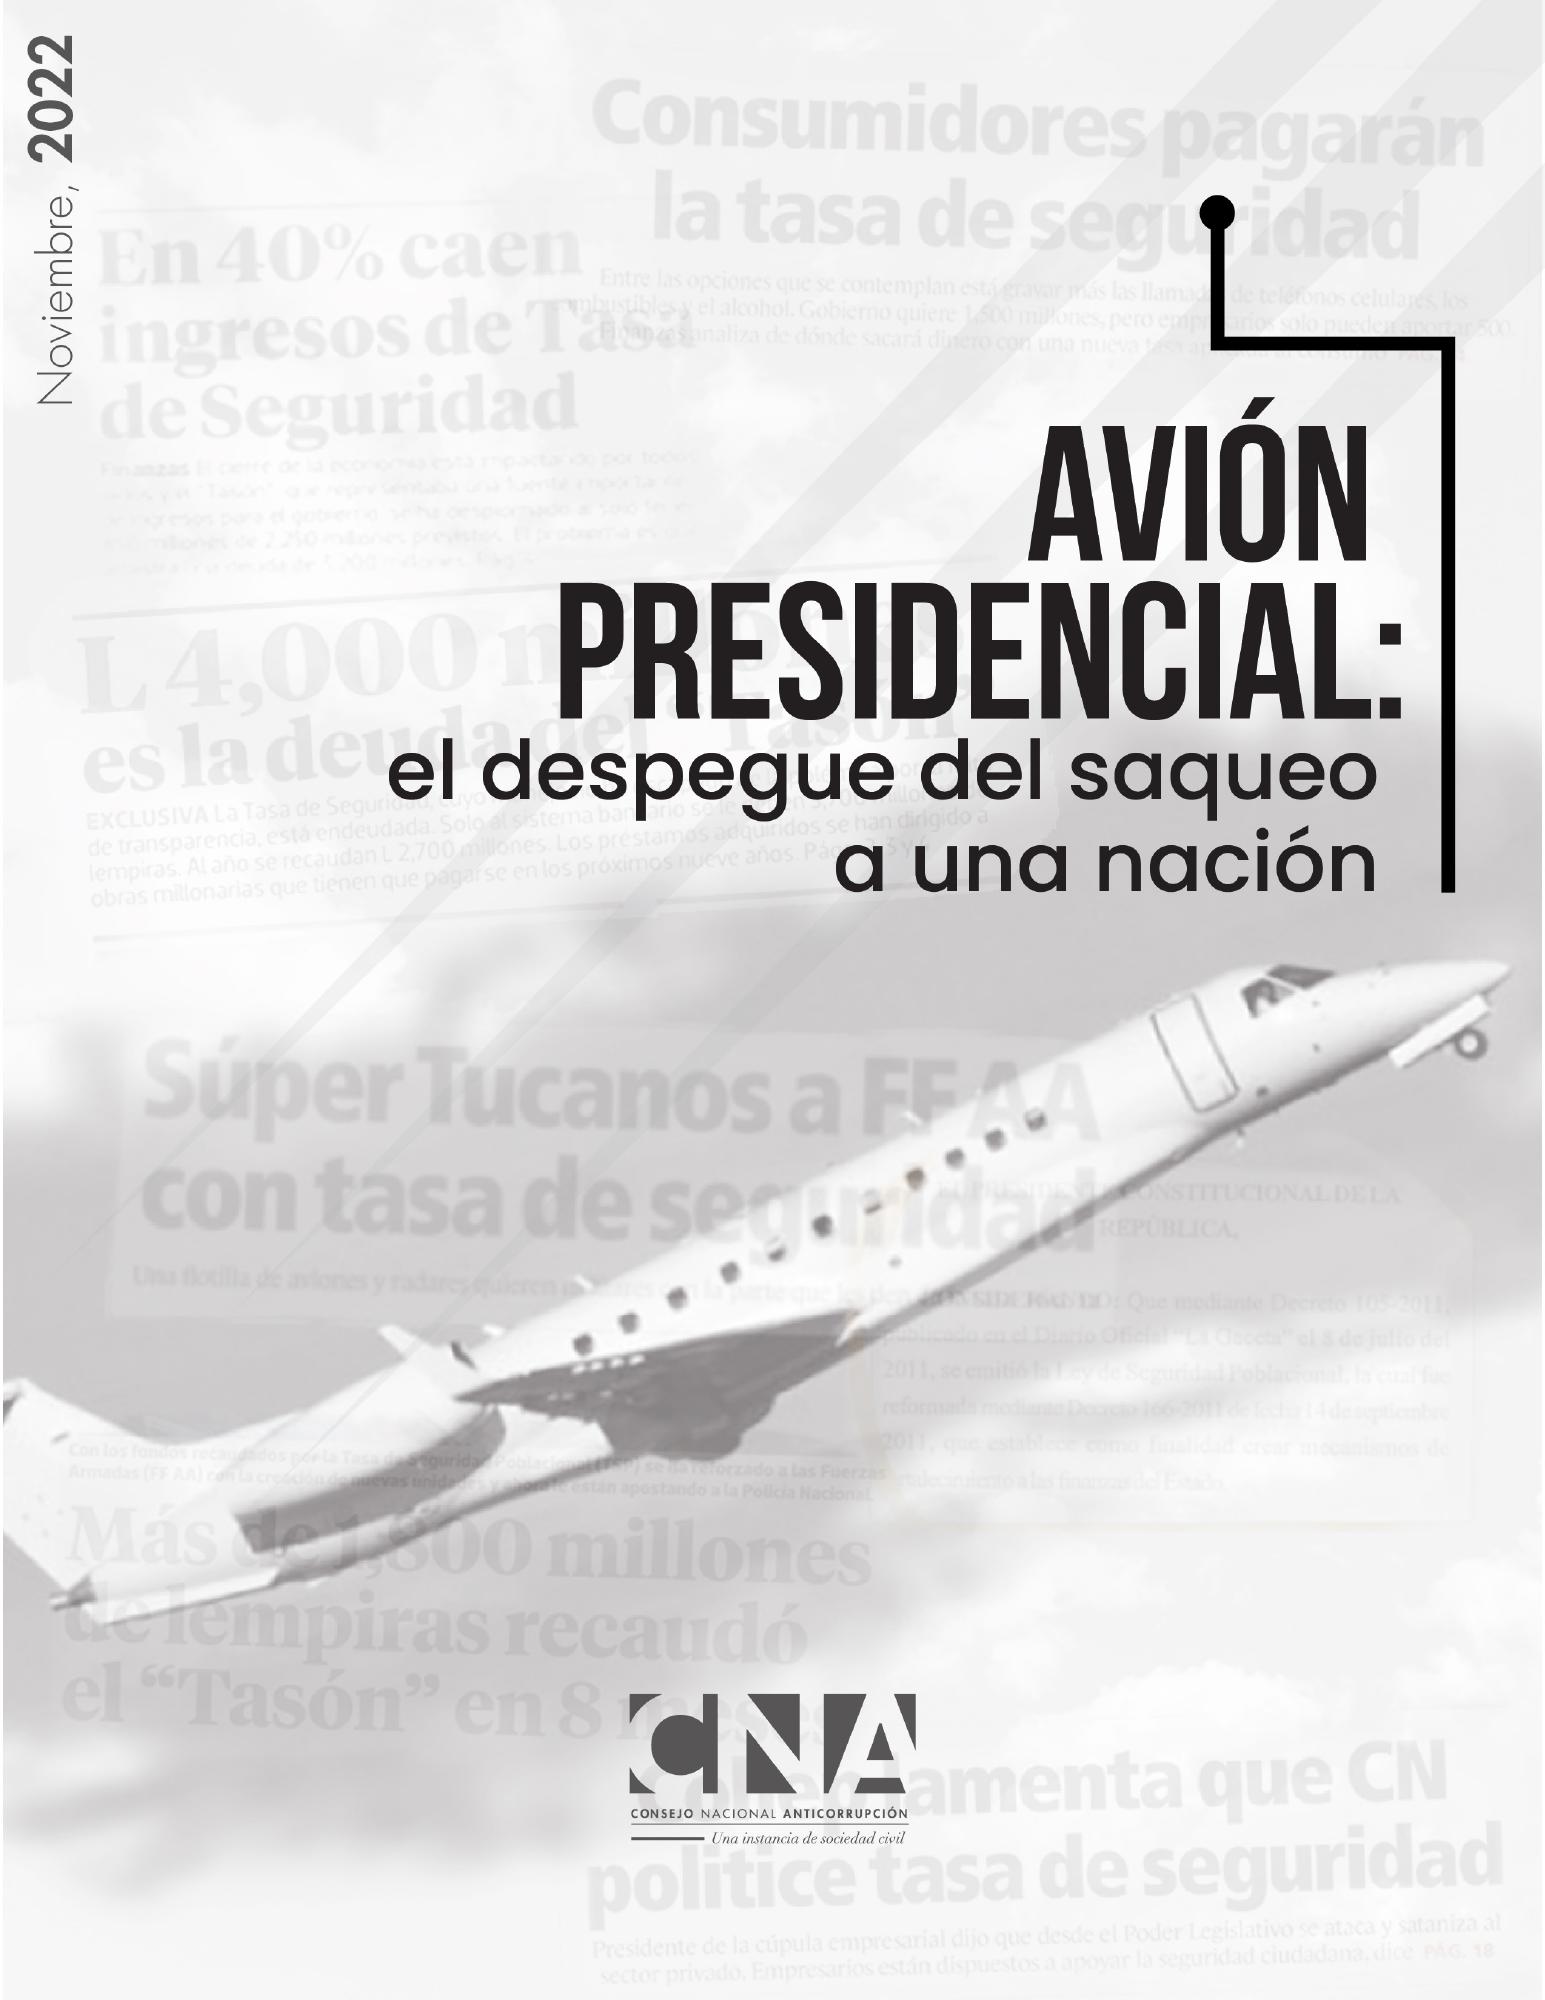 Informe de anomalías en compra de avión presidencial con fondos de Tasa de Seguridad